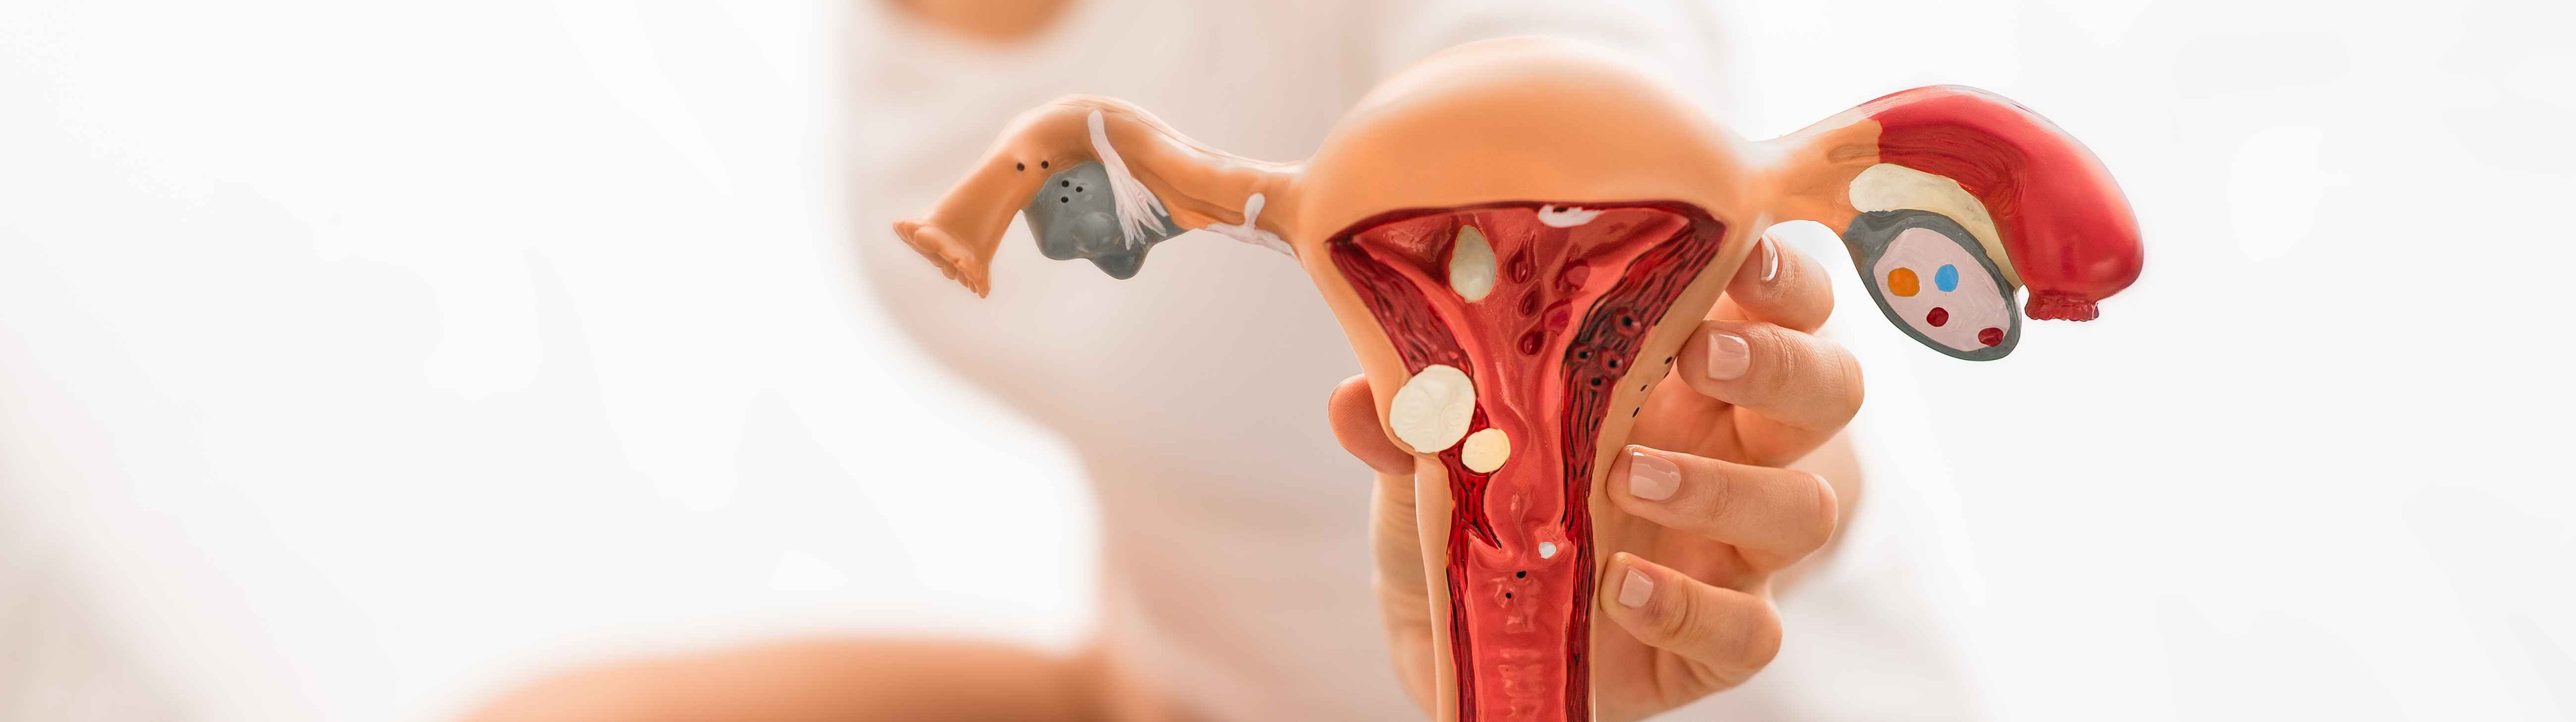 Es posible predecir el cáncer de endometrio con una prueba en casa